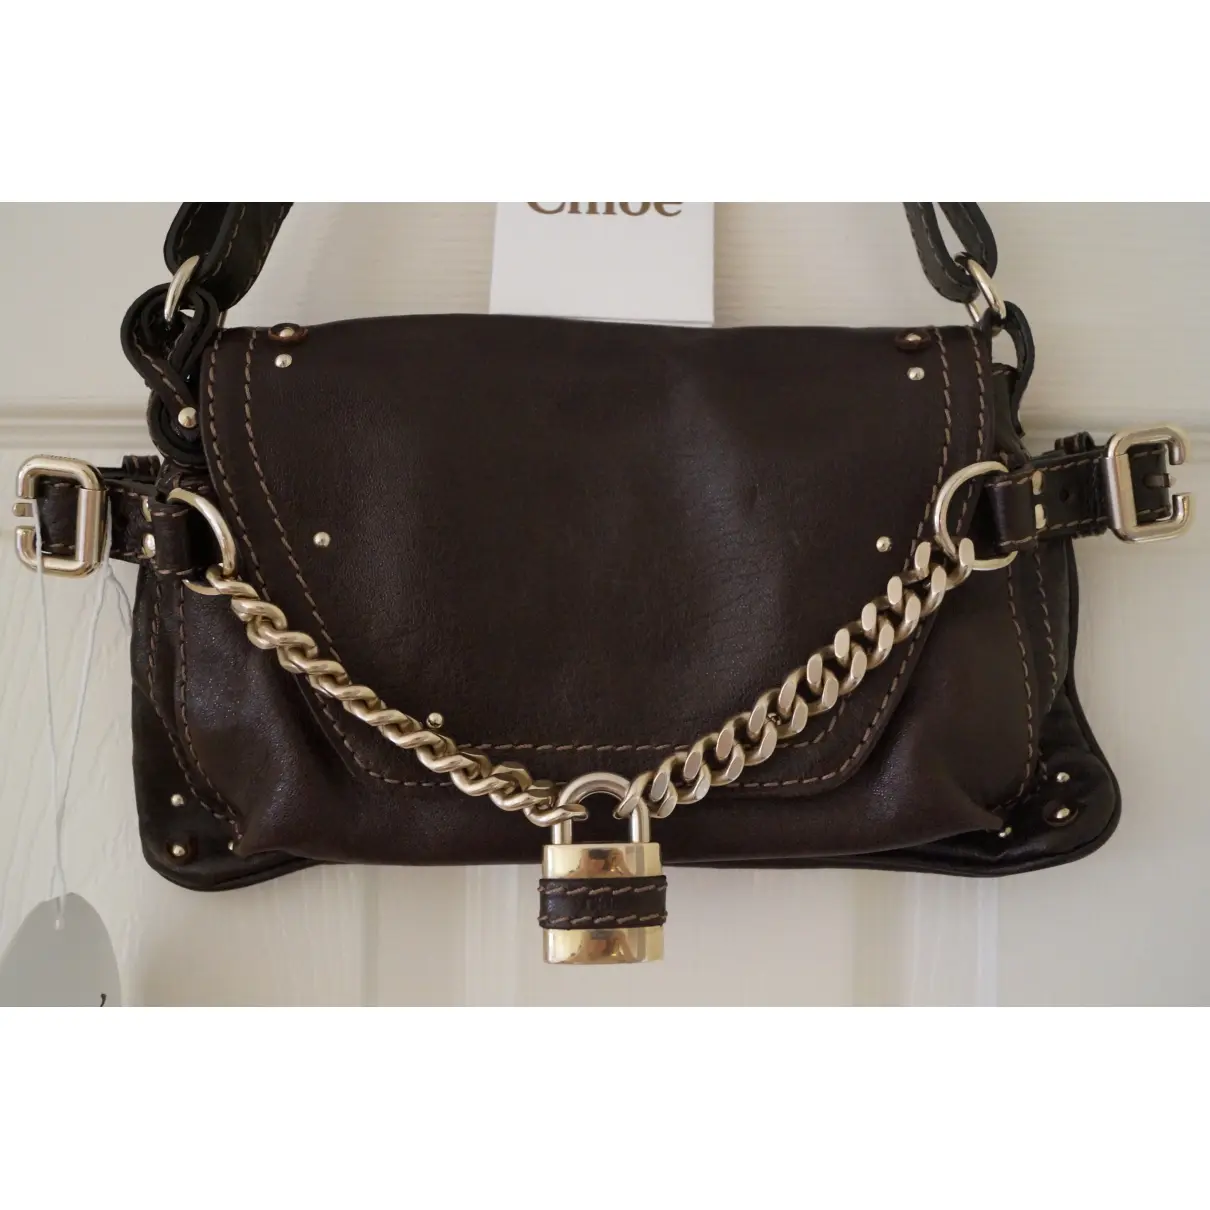 Chloé Paddington leather handbag for sale